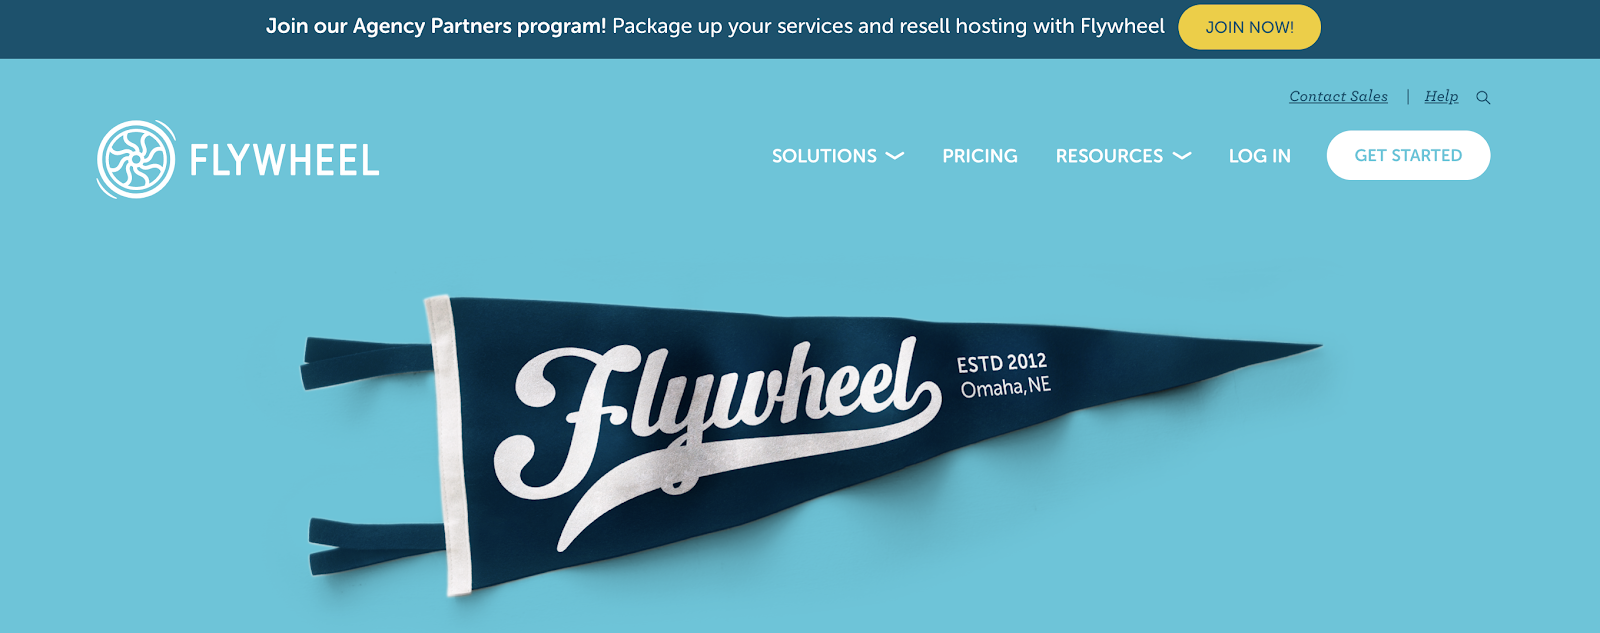 Flywheel Homepage Screenshot (Hosting Company)